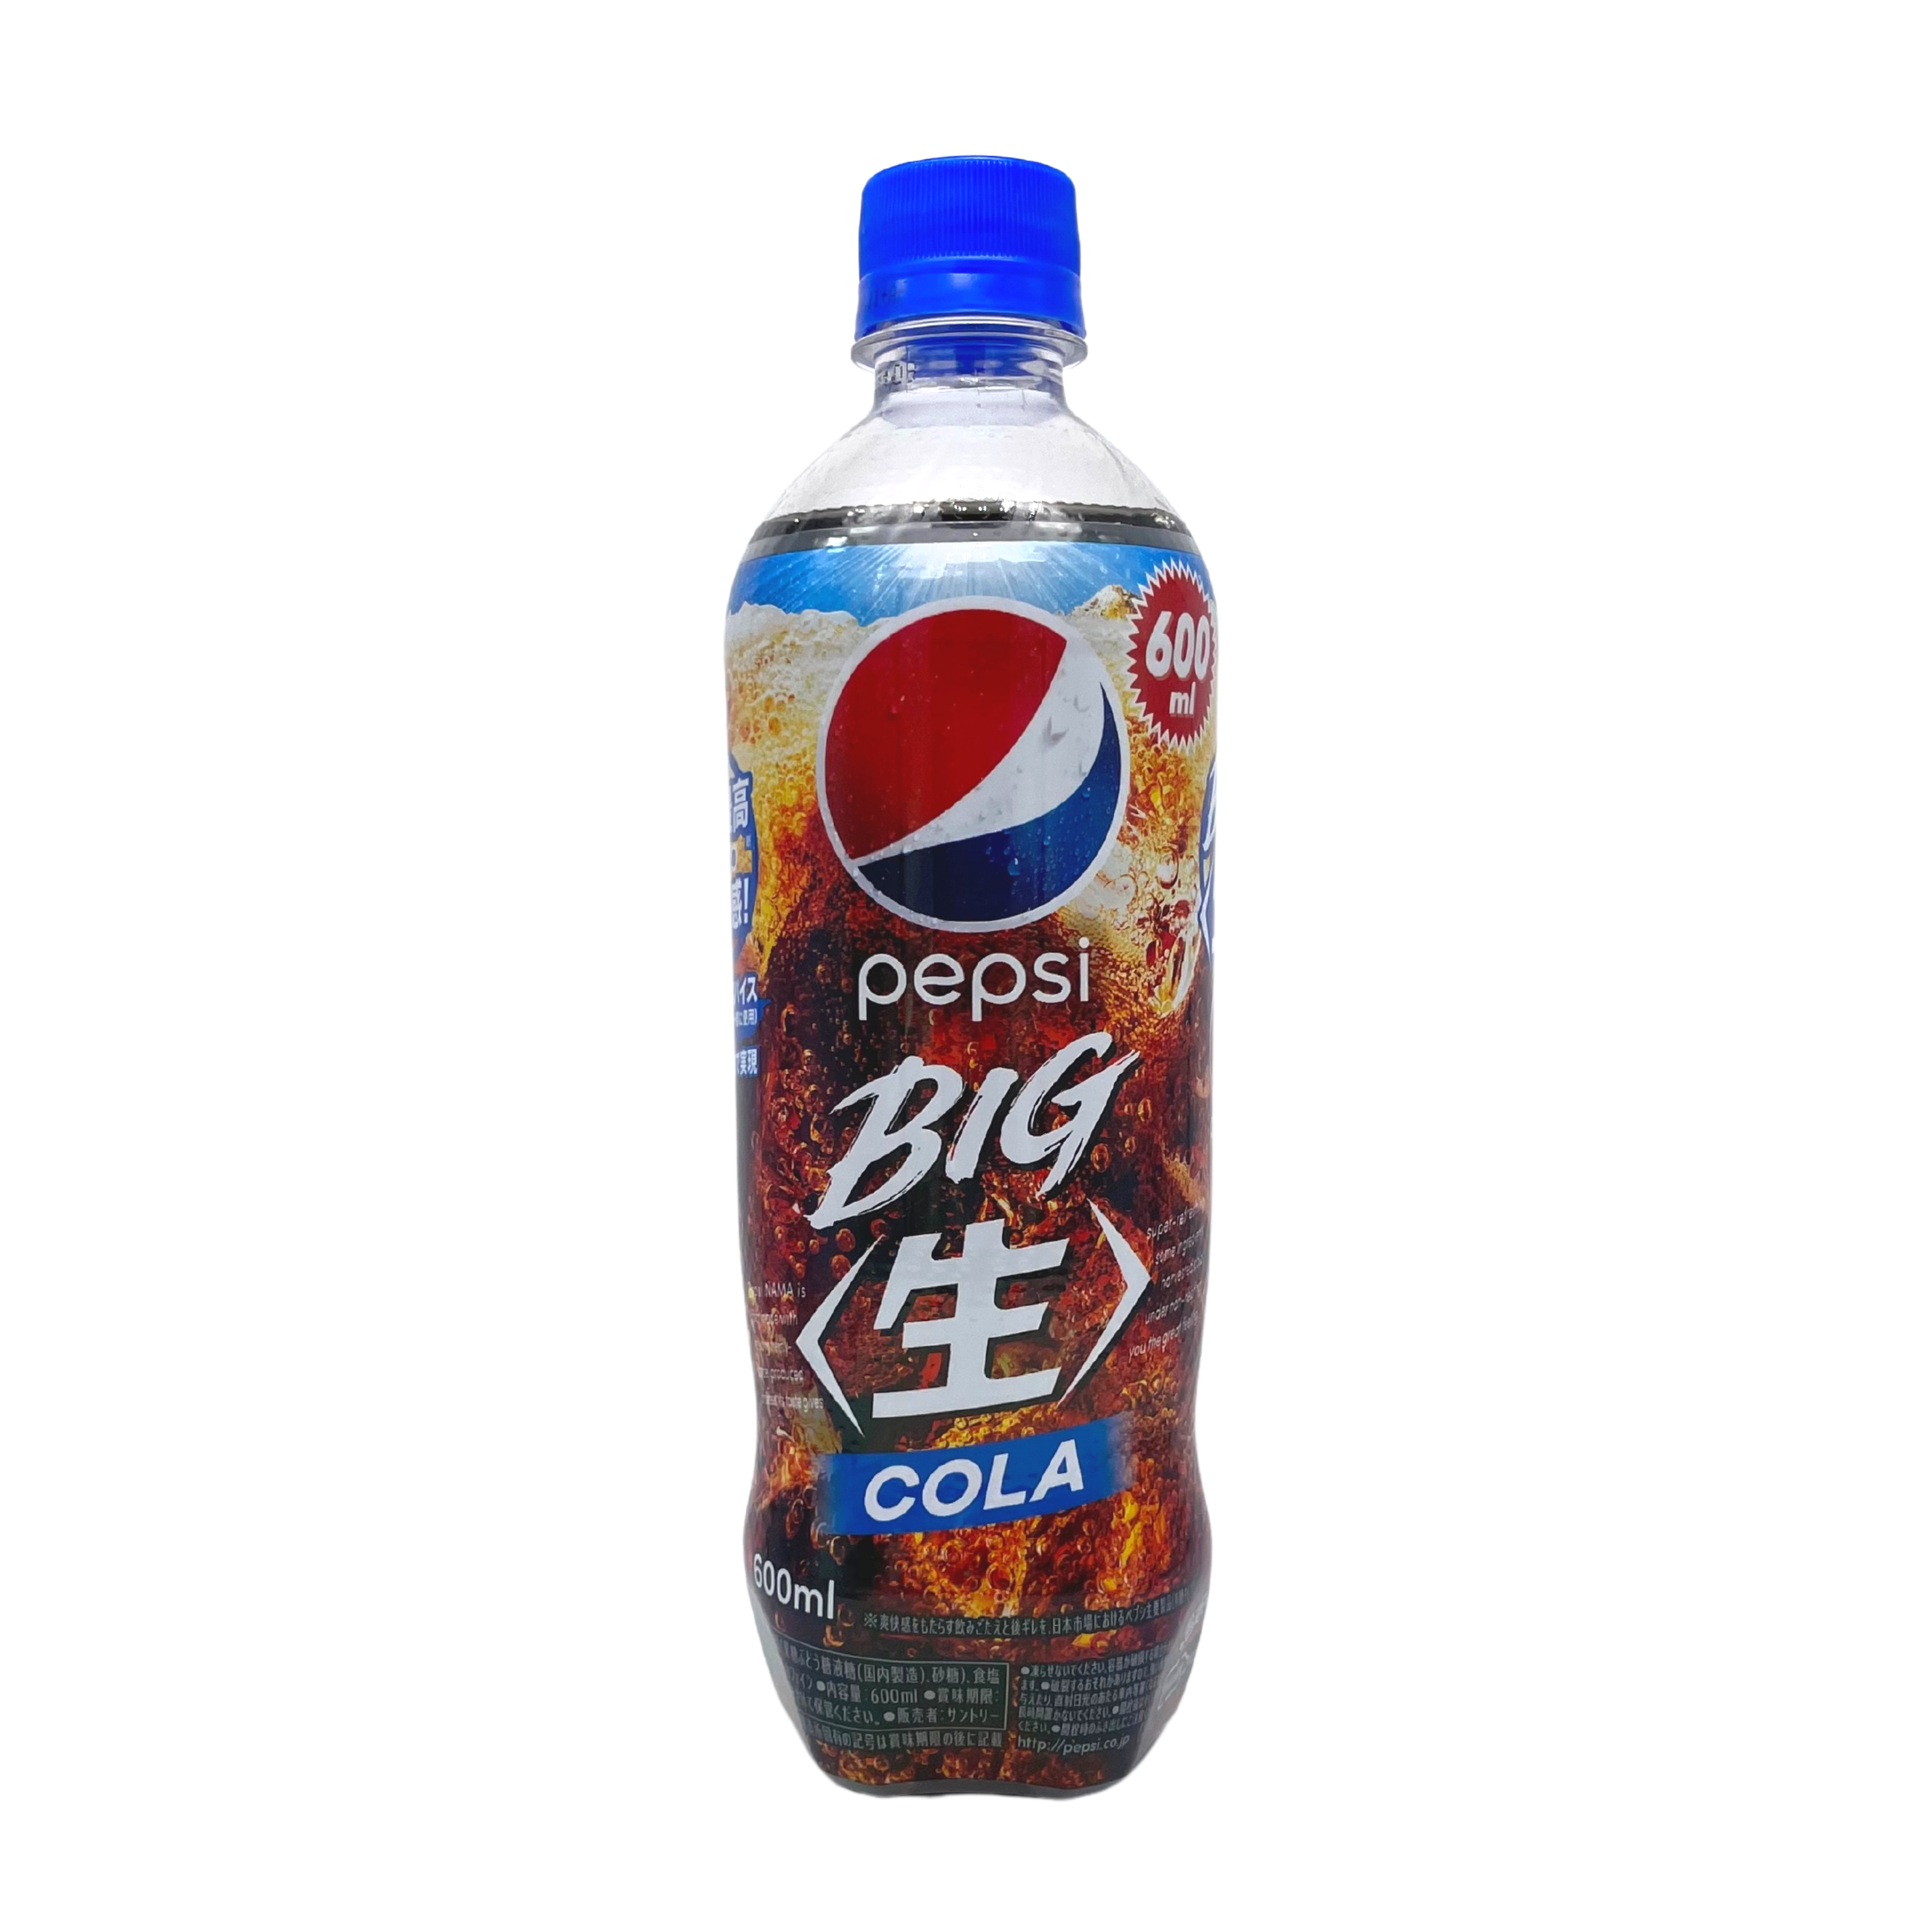 Pepsi - Big Cola Jap 600ml JAPAN IMPORT